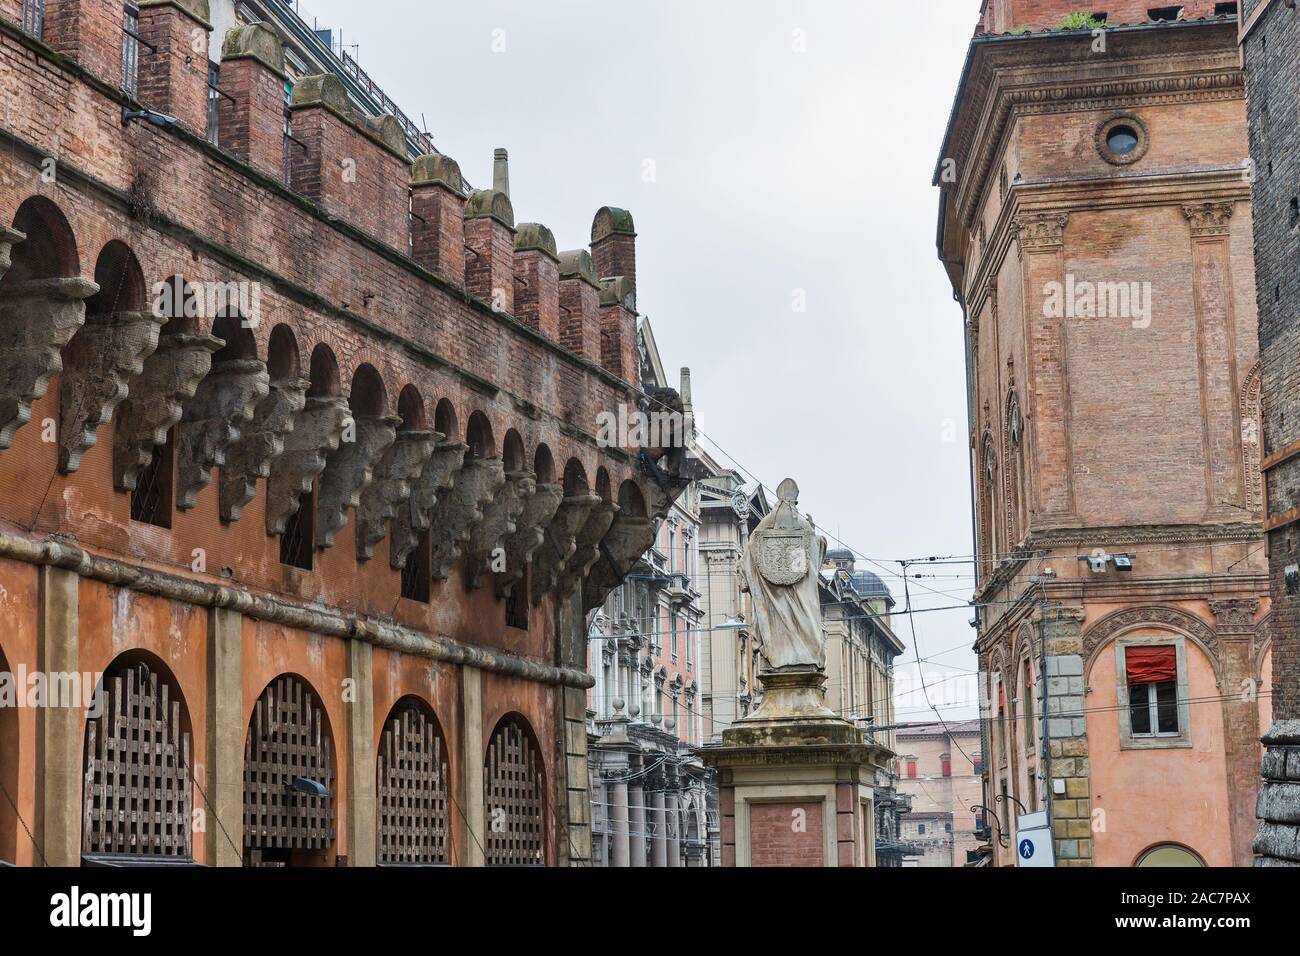 Paisaje urbano con vista inferior de las dos torres de Bolonia en un día lluvioso: Asinelli y Garisenda en Old Town, Italia. Foto de stock